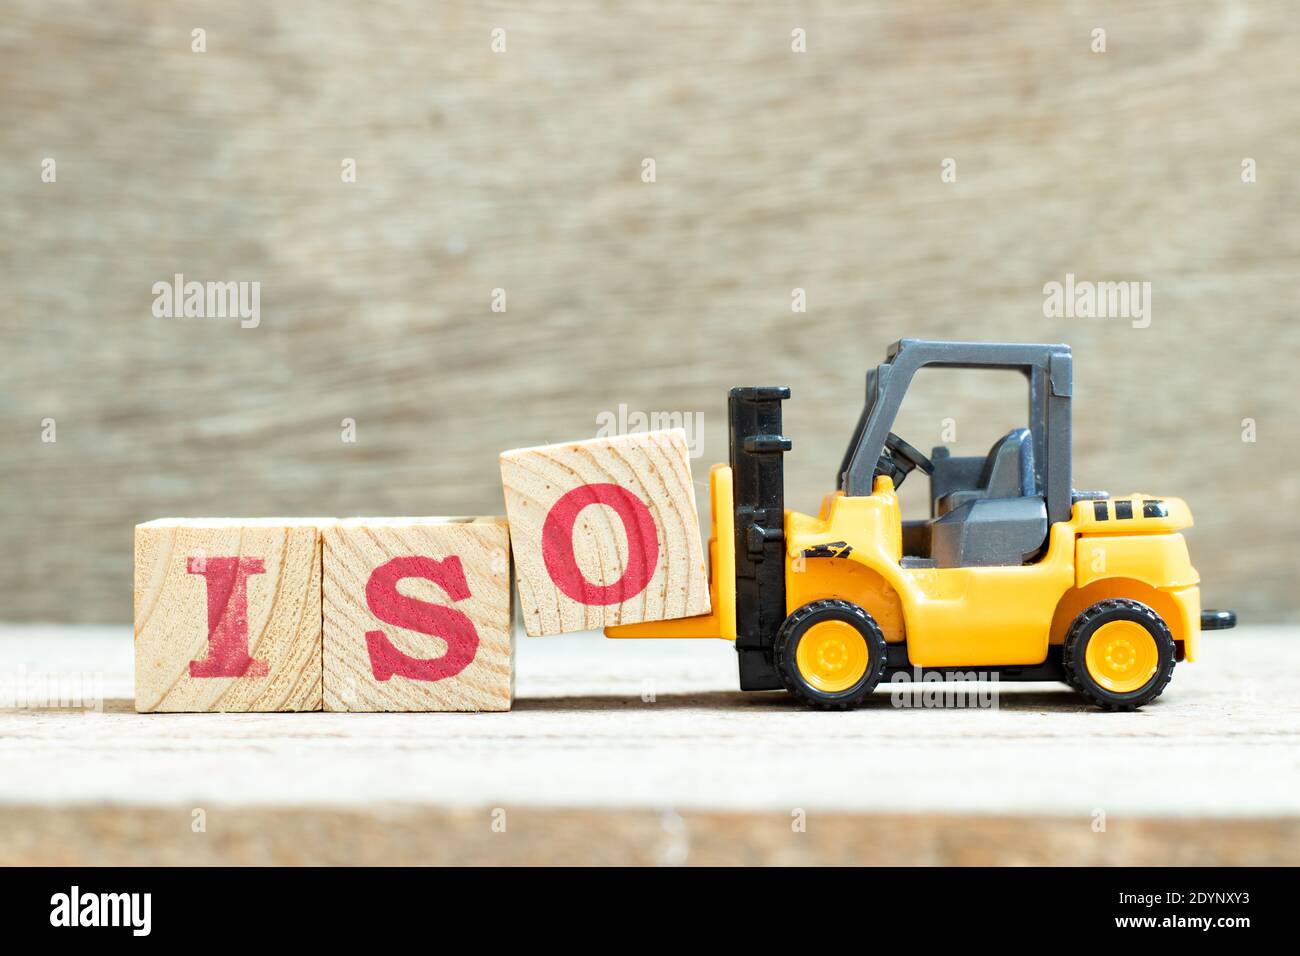 Spielzeug Gabelstapler halten Buchstaben Block o Wort iso zu vervollständigen Auf Holzhintergrund Stockfoto